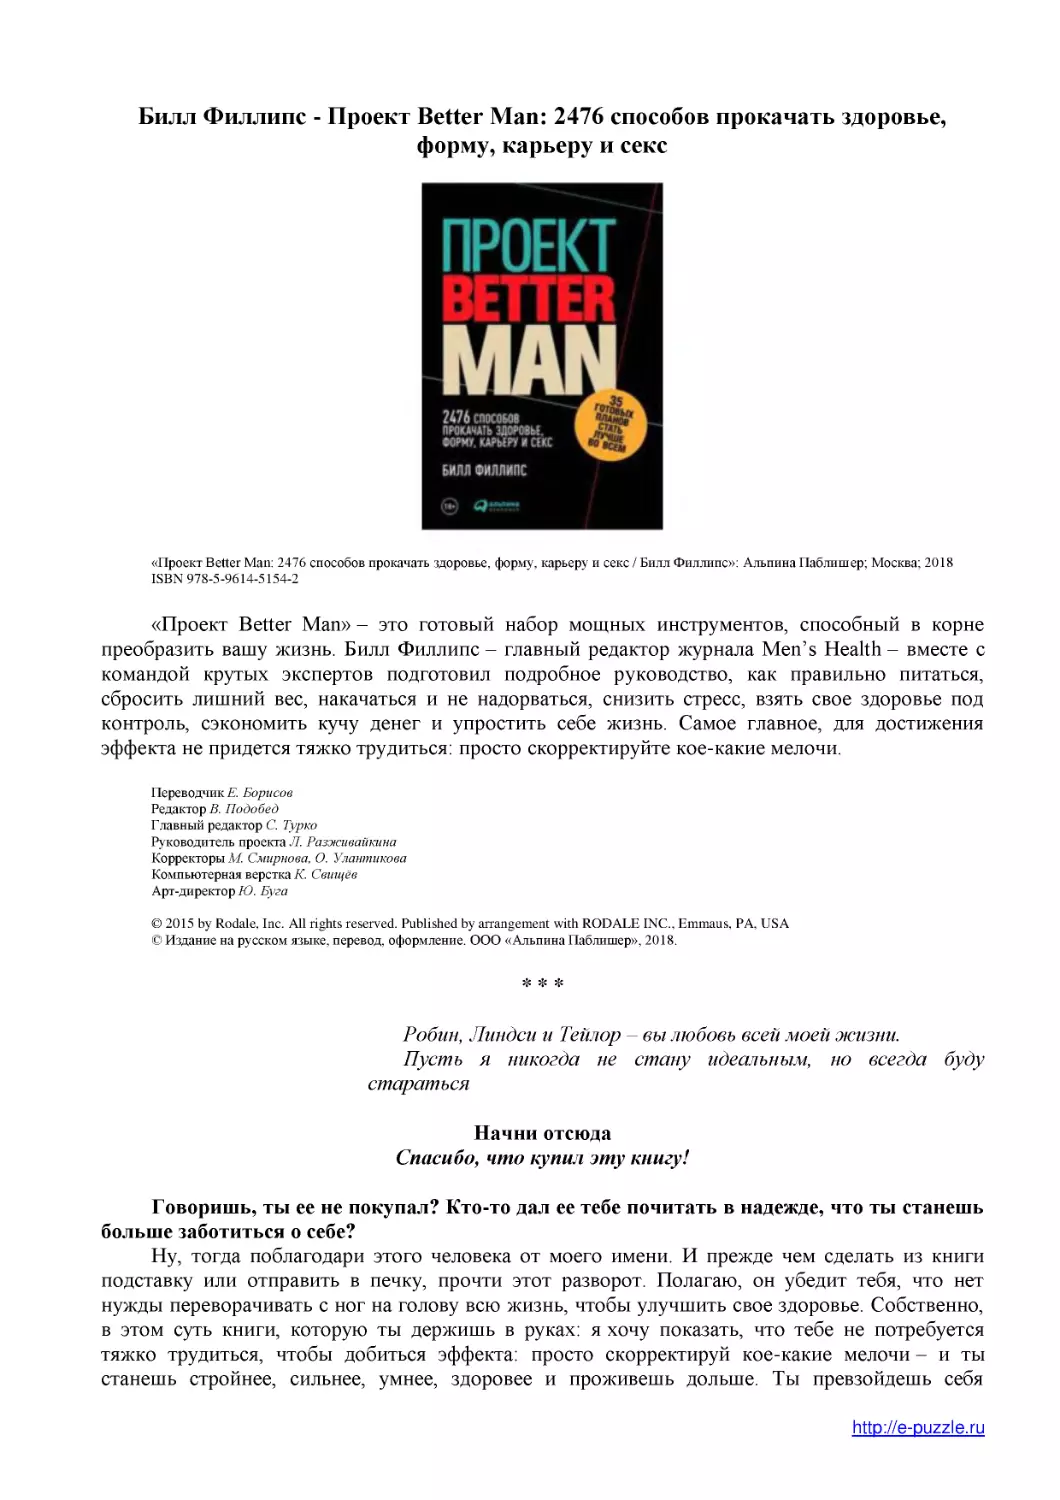 ﻿Билл Филлипс - Проект Better Man: 2476 способов прокачать здоровье, форму, карьеру и сек
﻿Начни отсюд
﻿Спасибо, что купил эту книгу